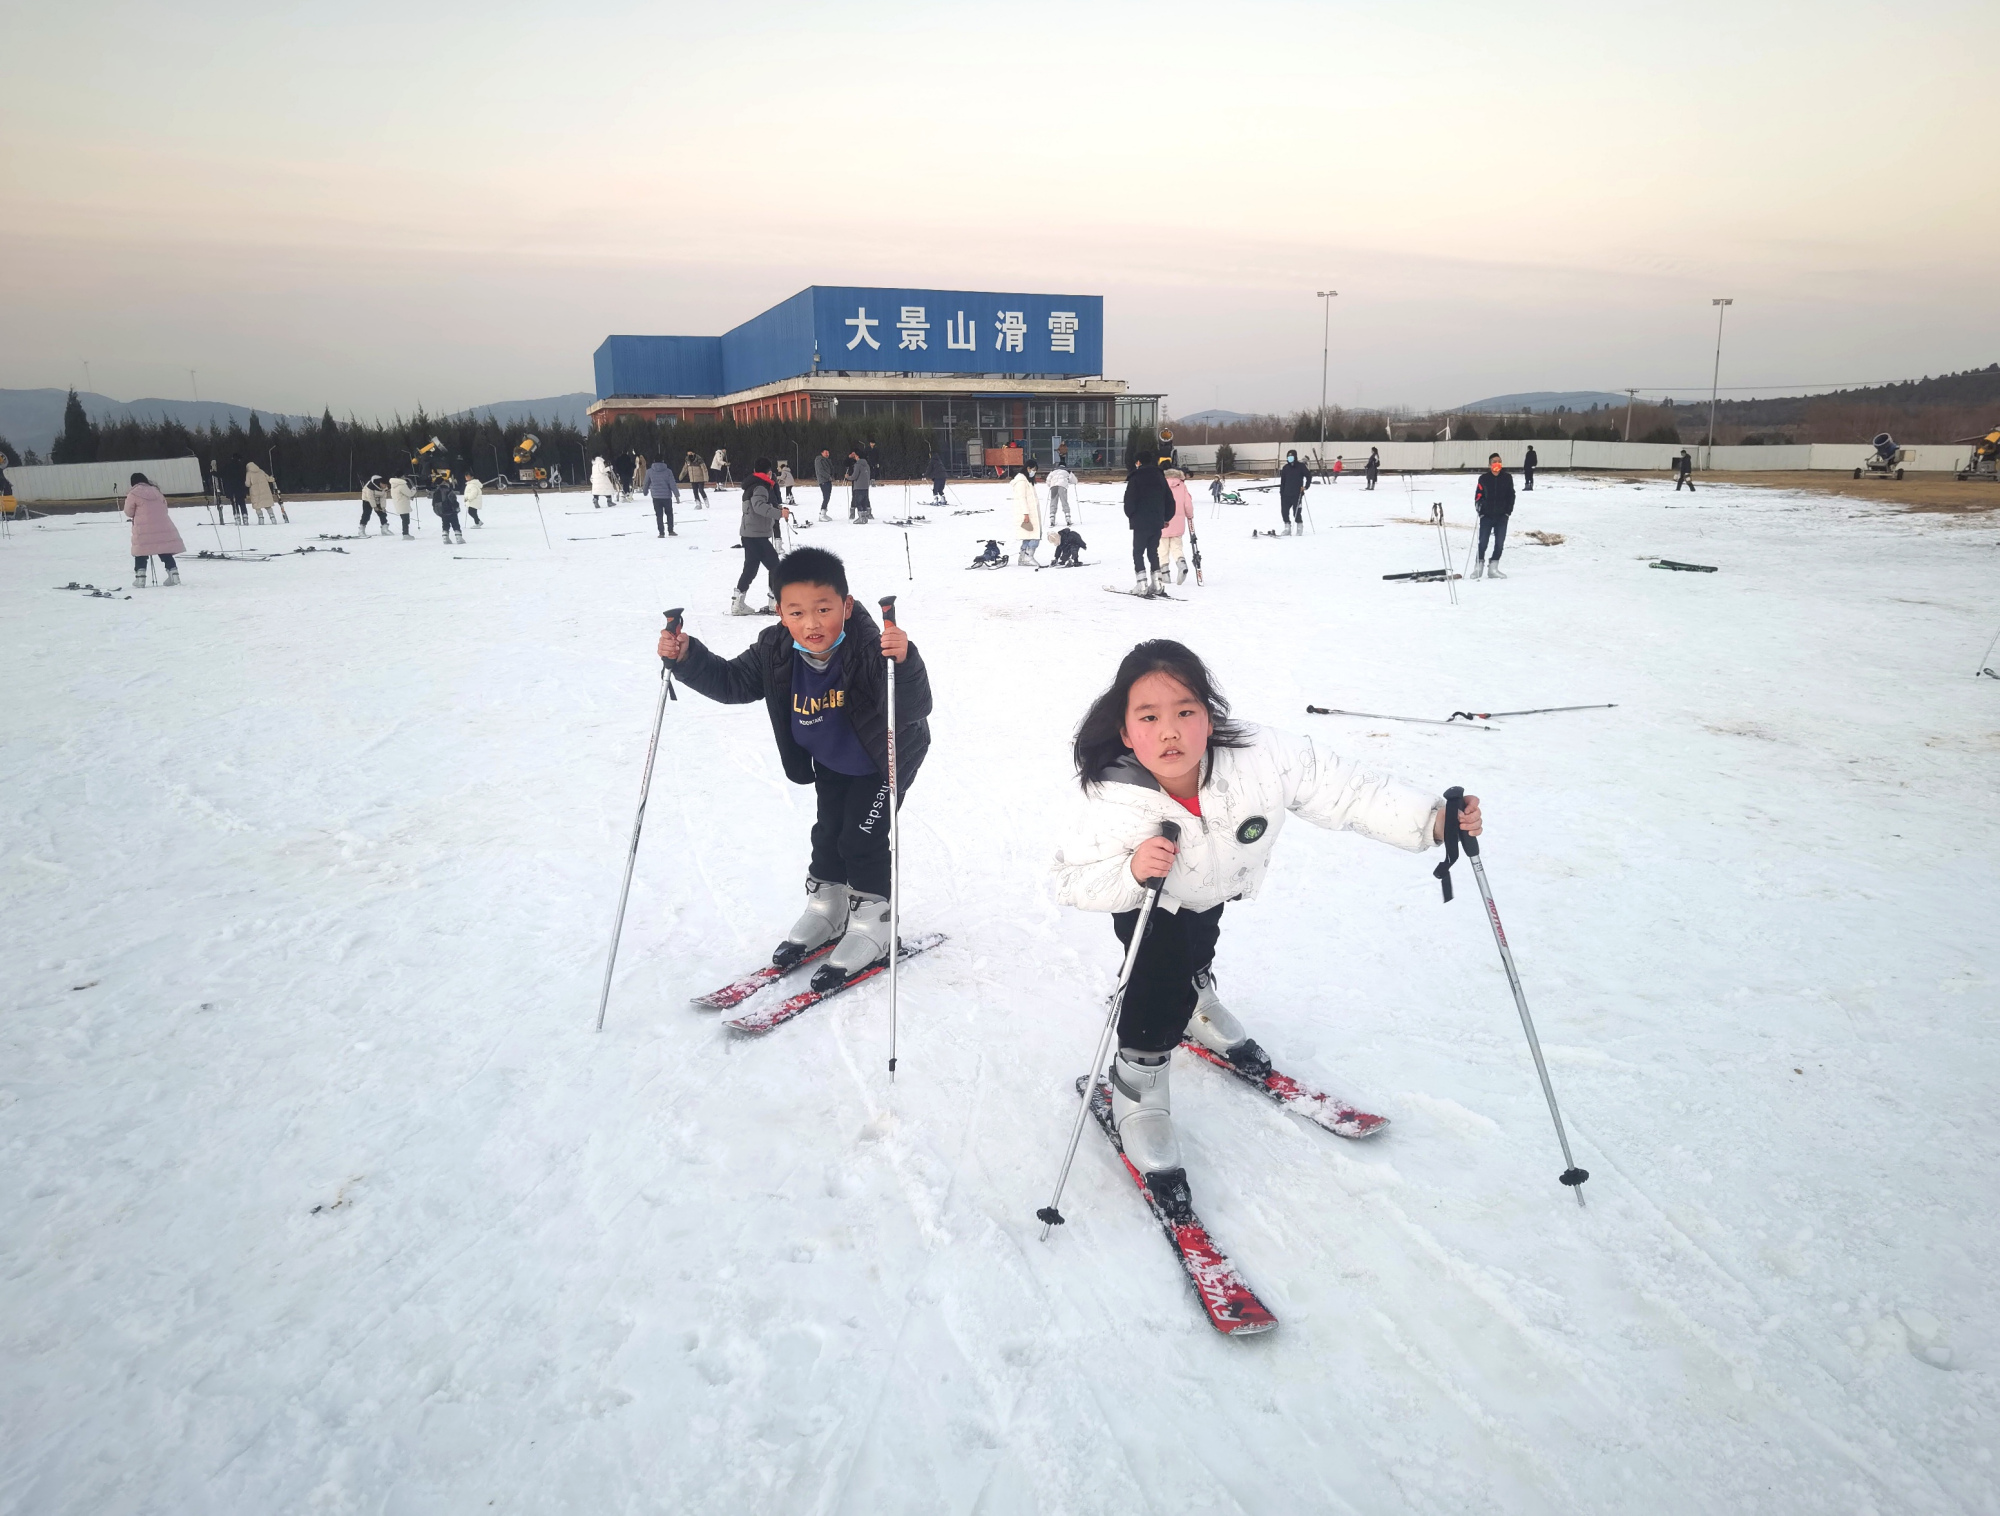 徐州大景山滑雪开园啦,最详细的滑雪攻略在此